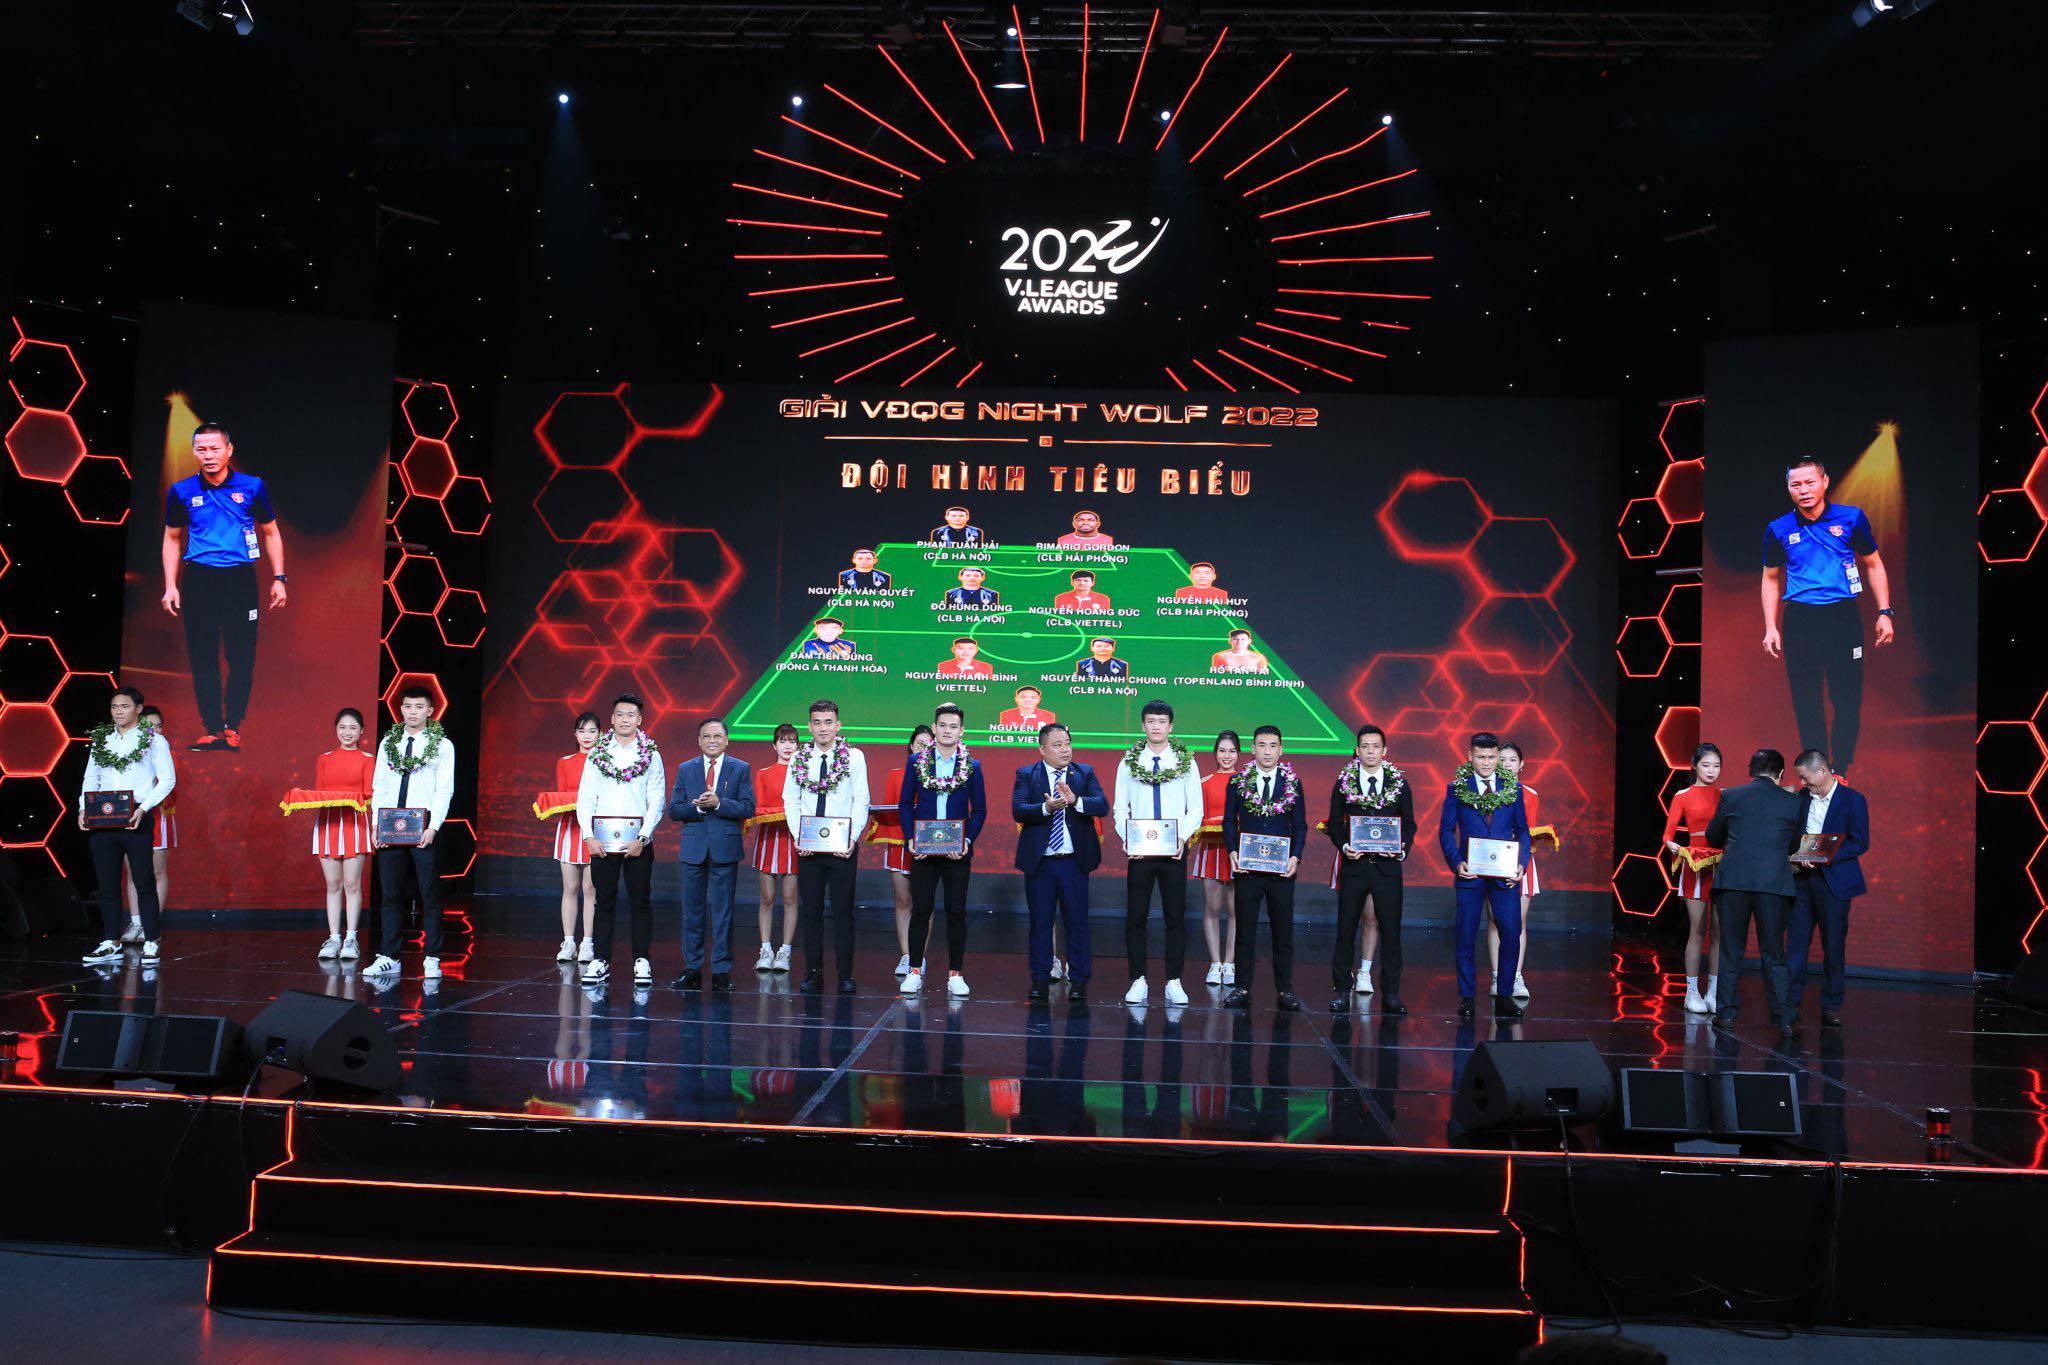 HLV Chu Đình Nghiêm (HLV xuất sắc nhất) và 11 cầu thủ trong đội hình tiêu biểu V.League 2022 - Ảnh: Đức Cường 